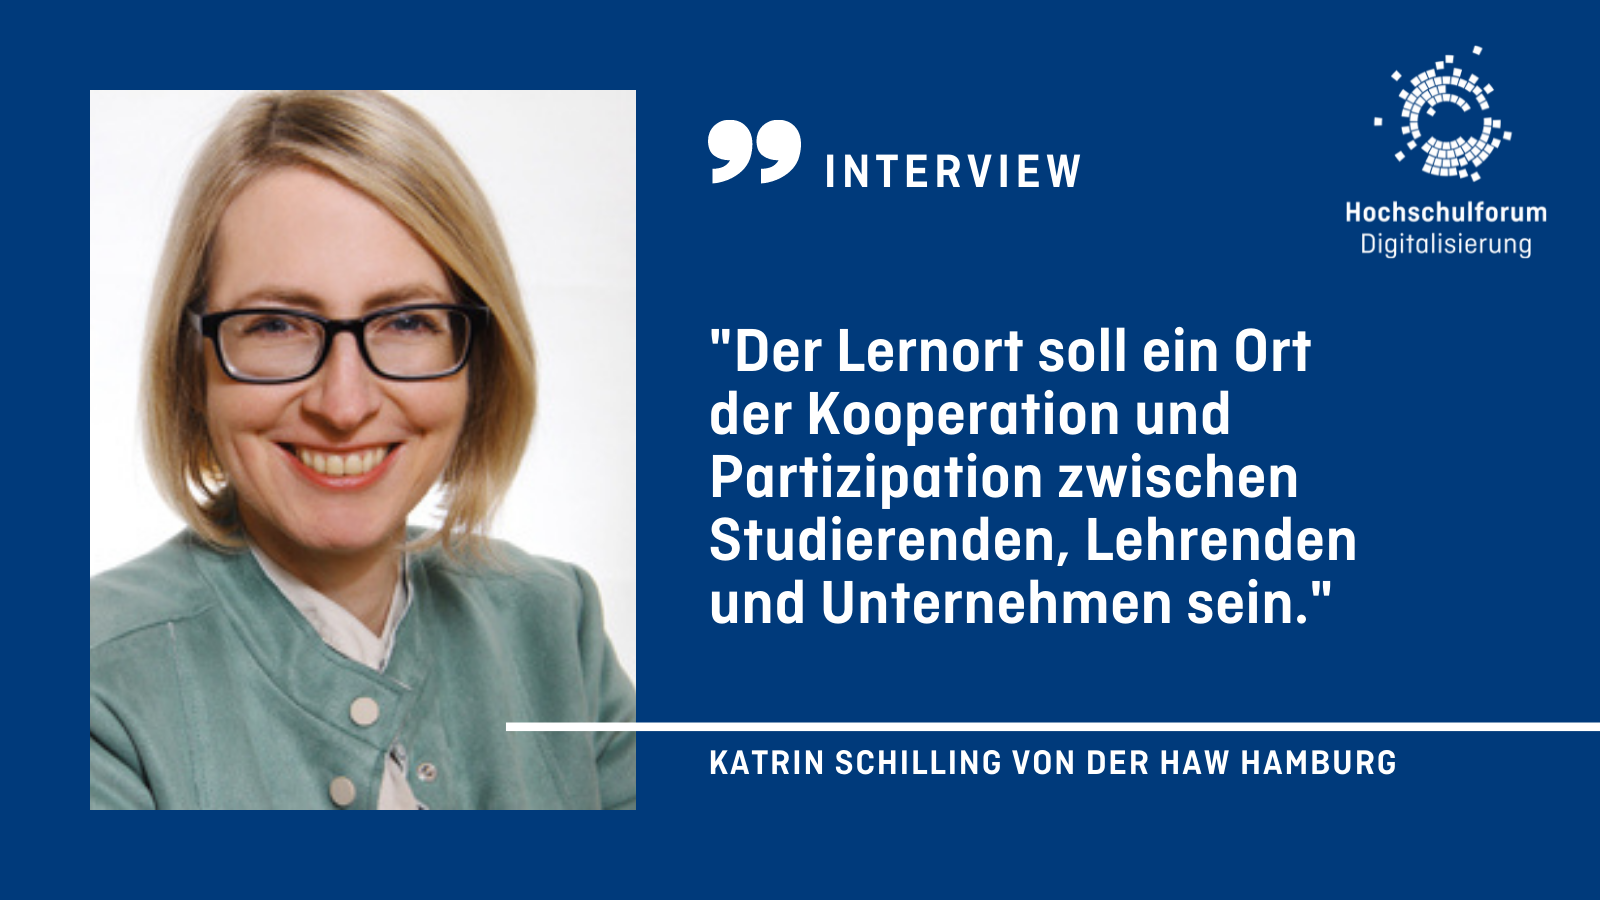 Portrait der Autorin. Text: Interview. "Der Lernort soll ein Ort der Kooperation und Partizipation zwischen Studierenden, Lehrenden und Unternehmen sein." Katrin Schilling von der HAW Hamburg.